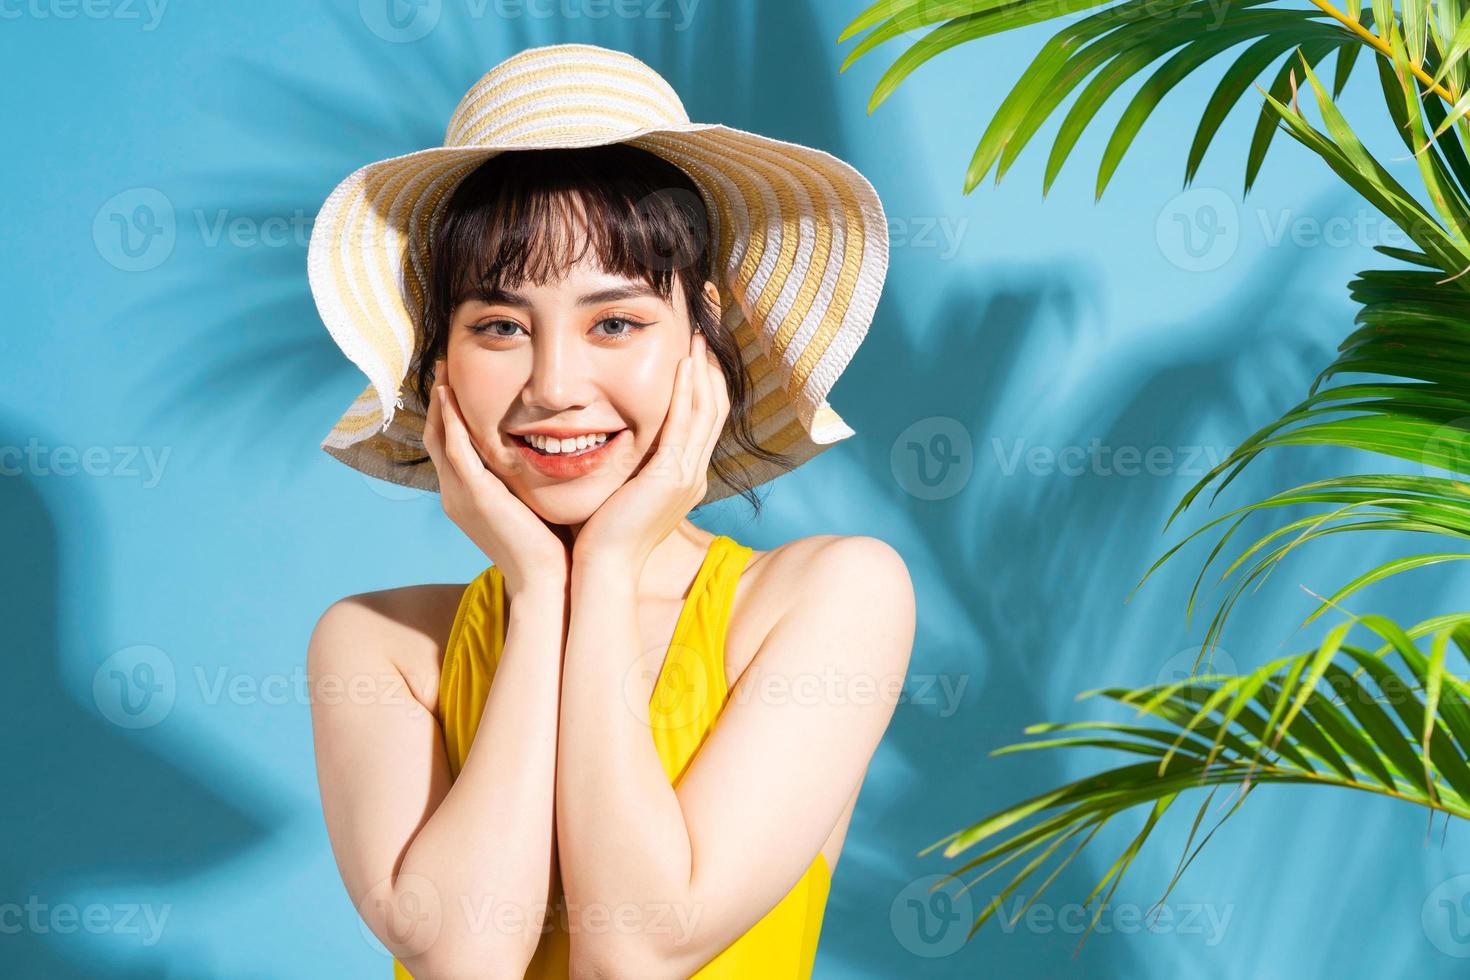 belle femme asiatique portant une combinaison jaune sur fond bleu et concept d'été photo